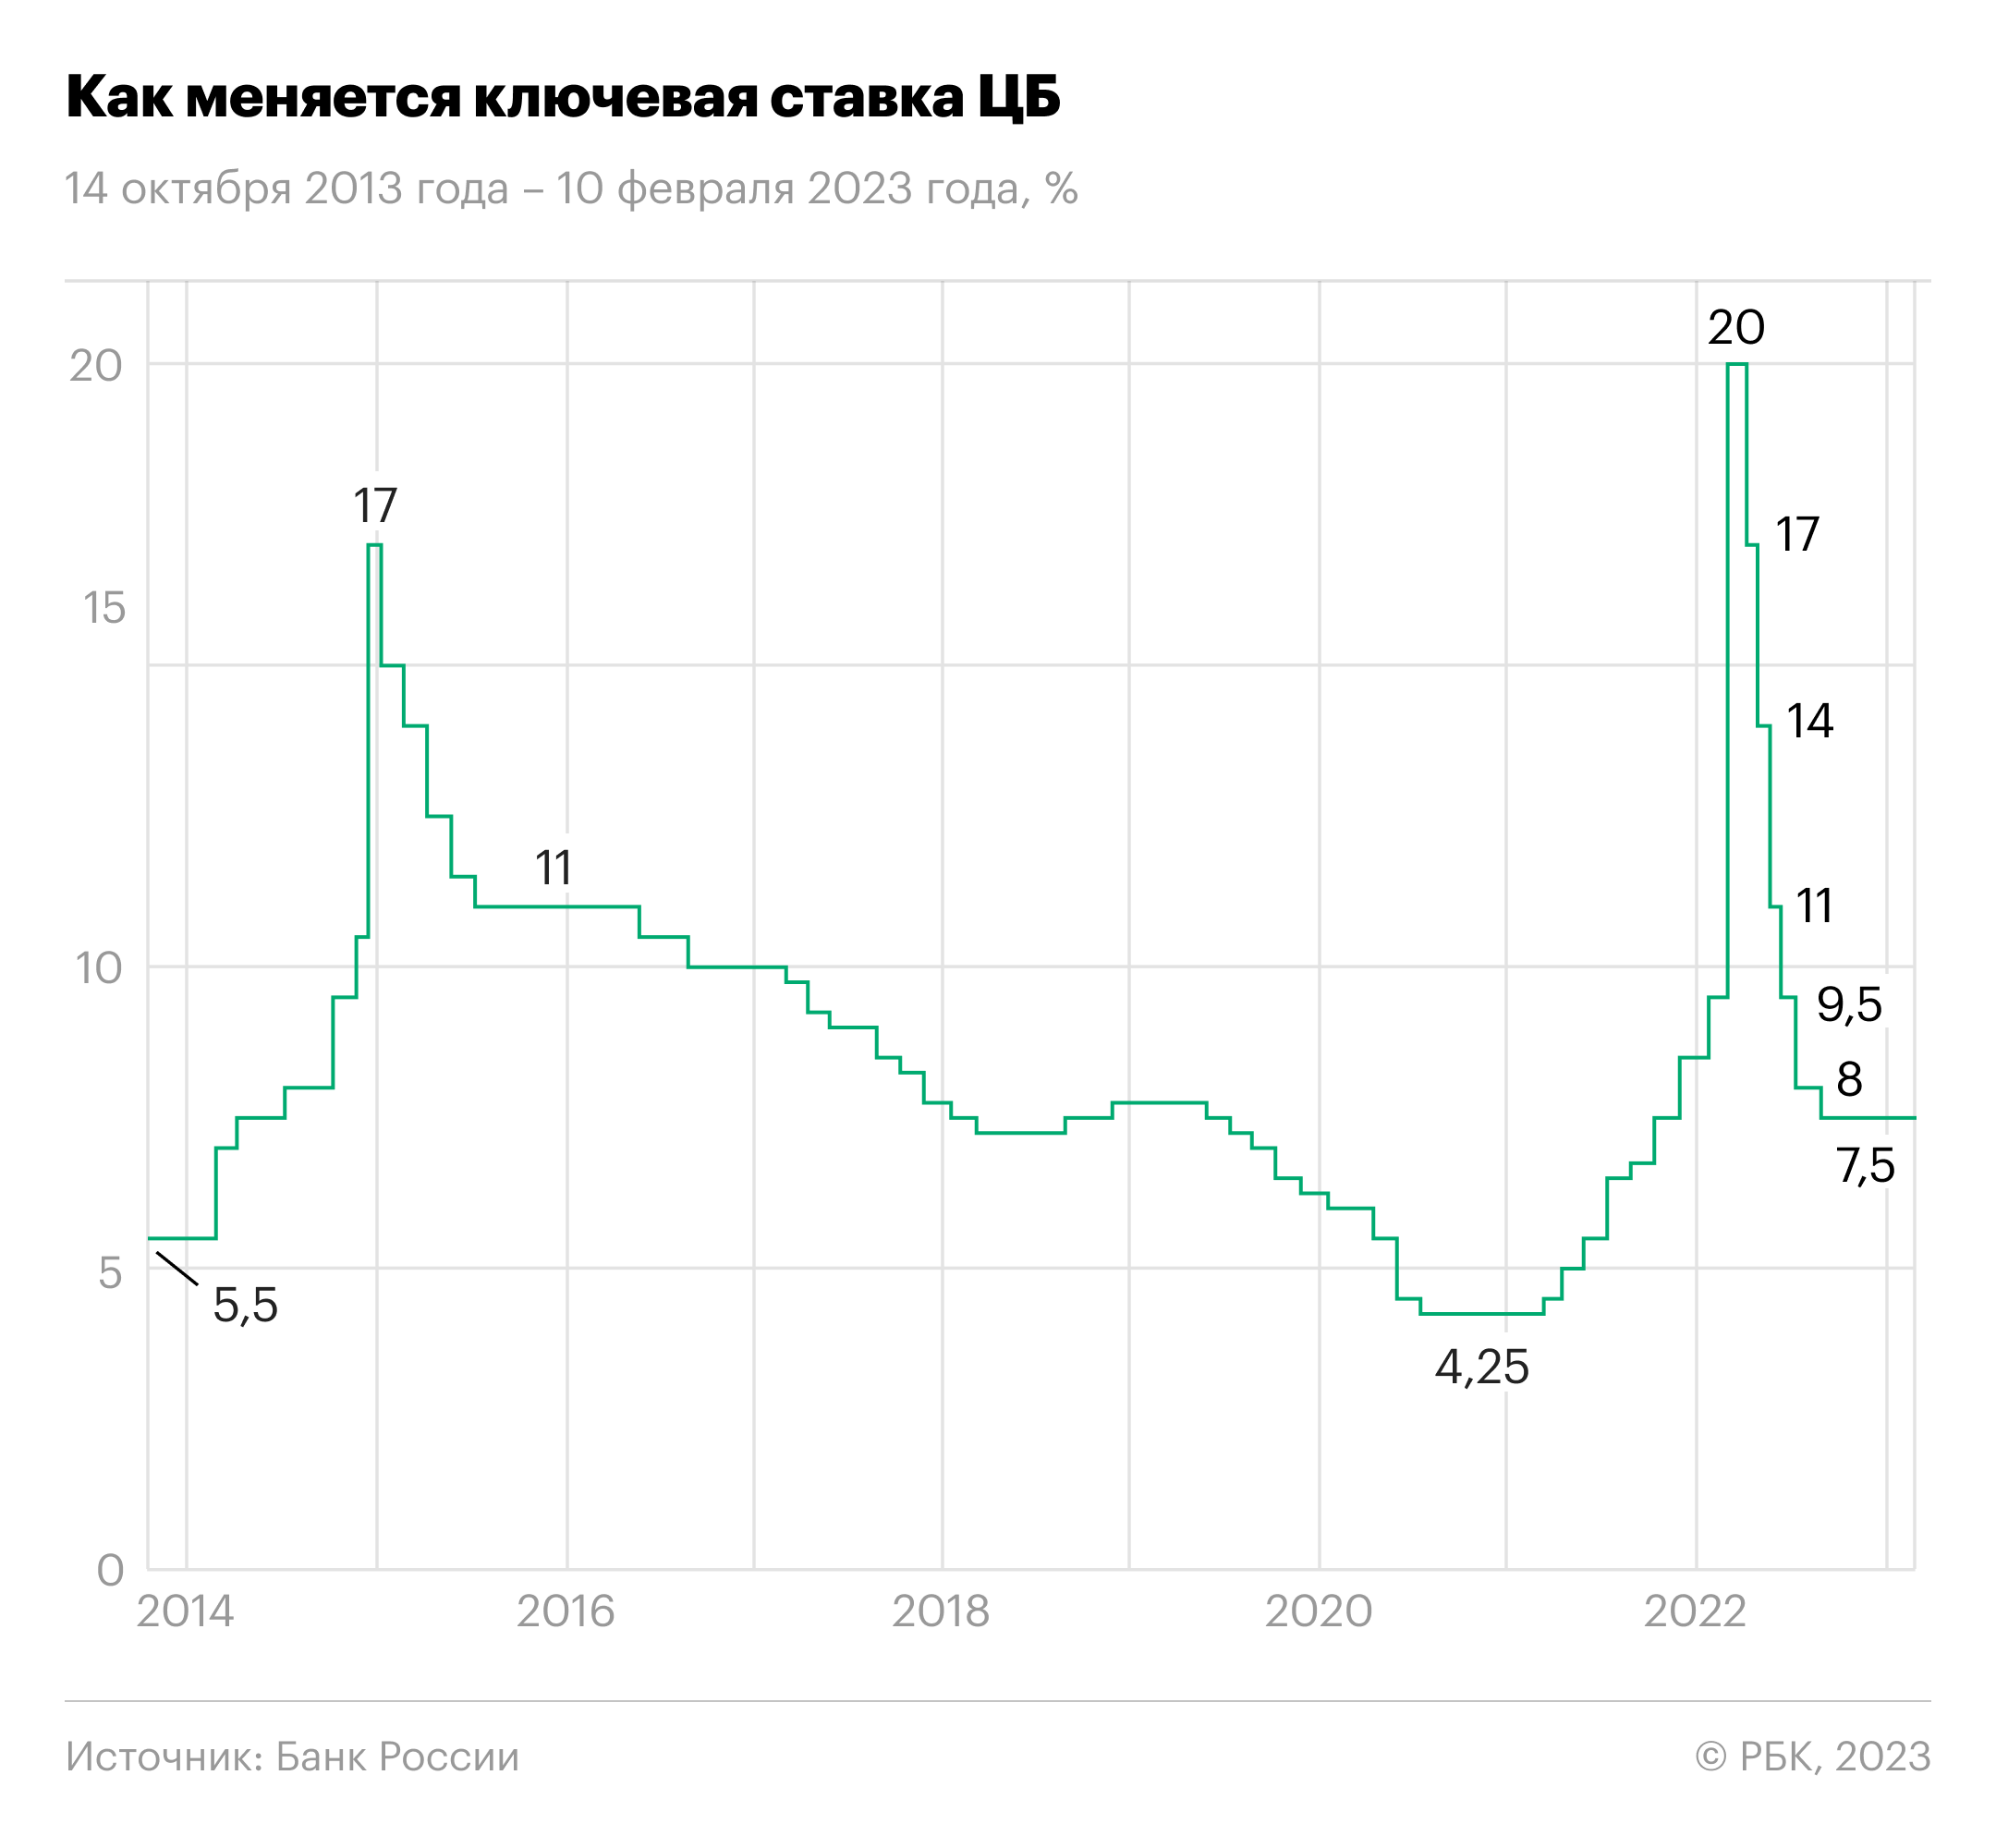 Медведев подвел итоги года военной операции на Украине